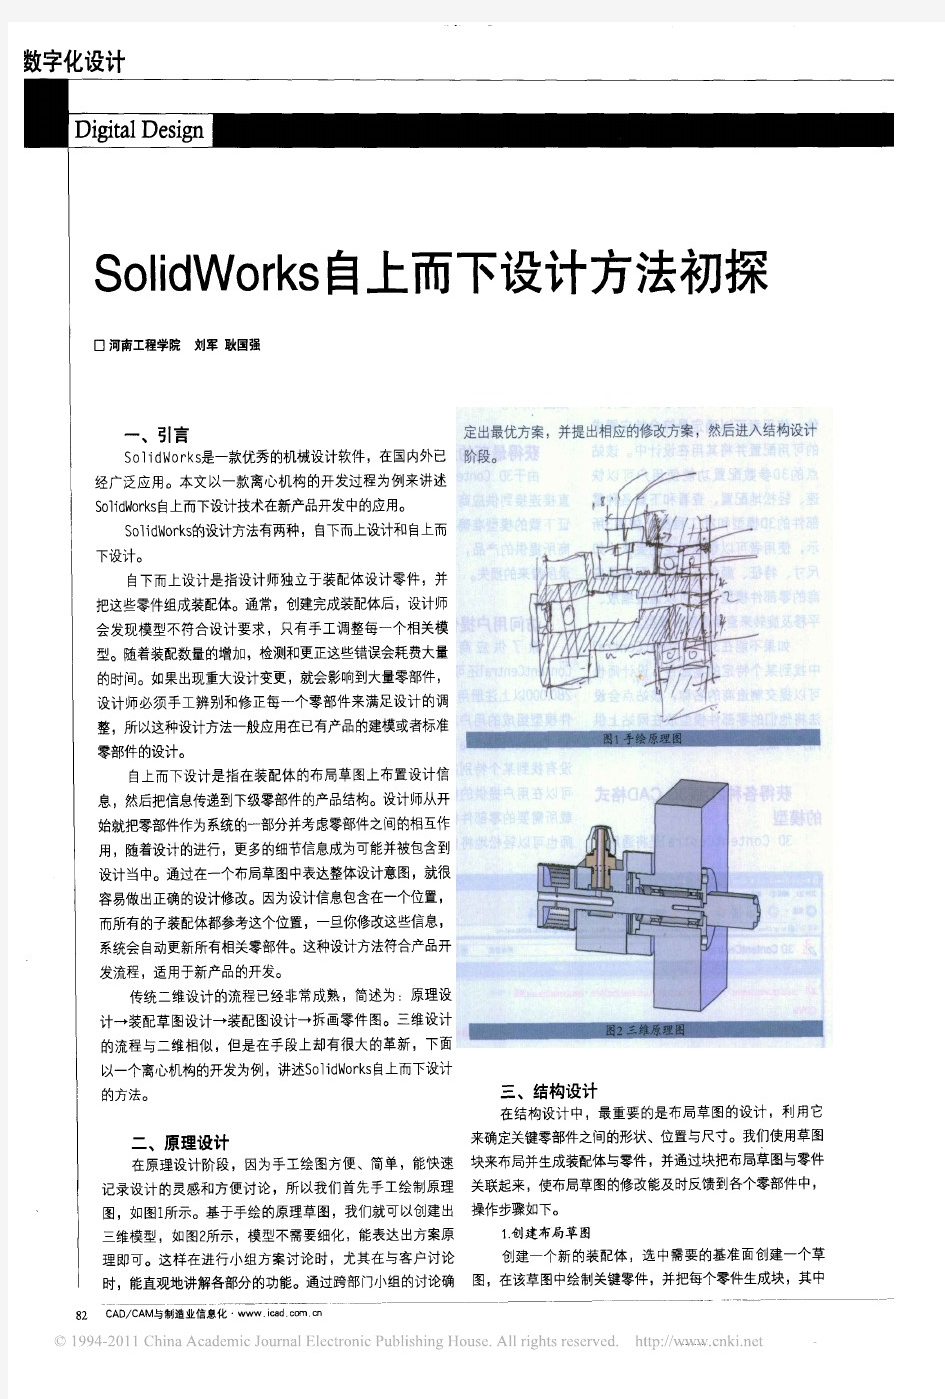 SolidWorks自上而下设计方法初探